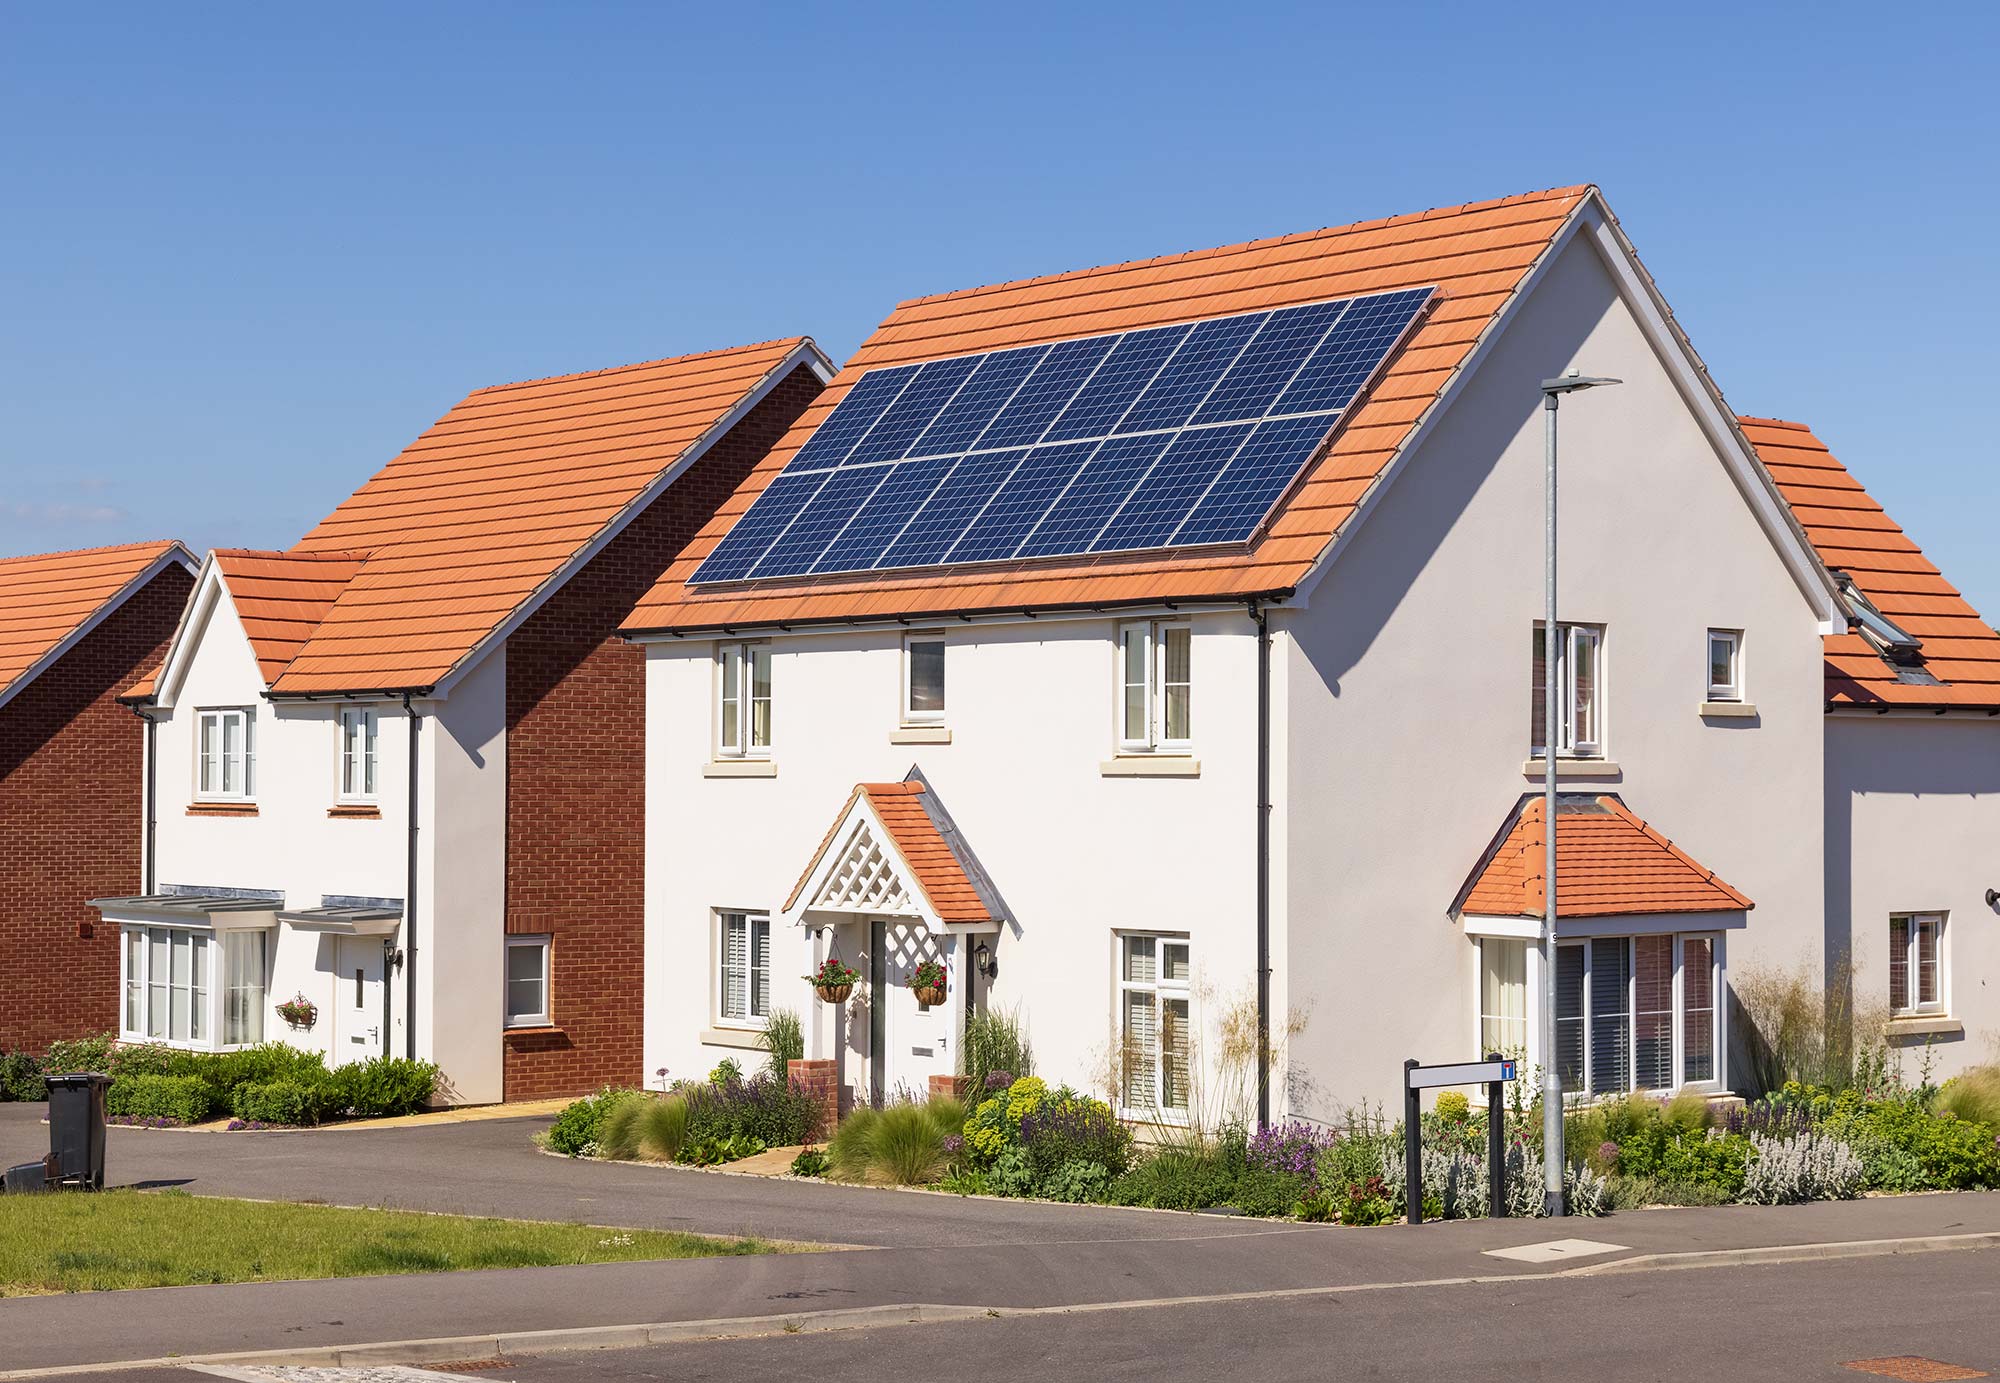 Solar panels on large house